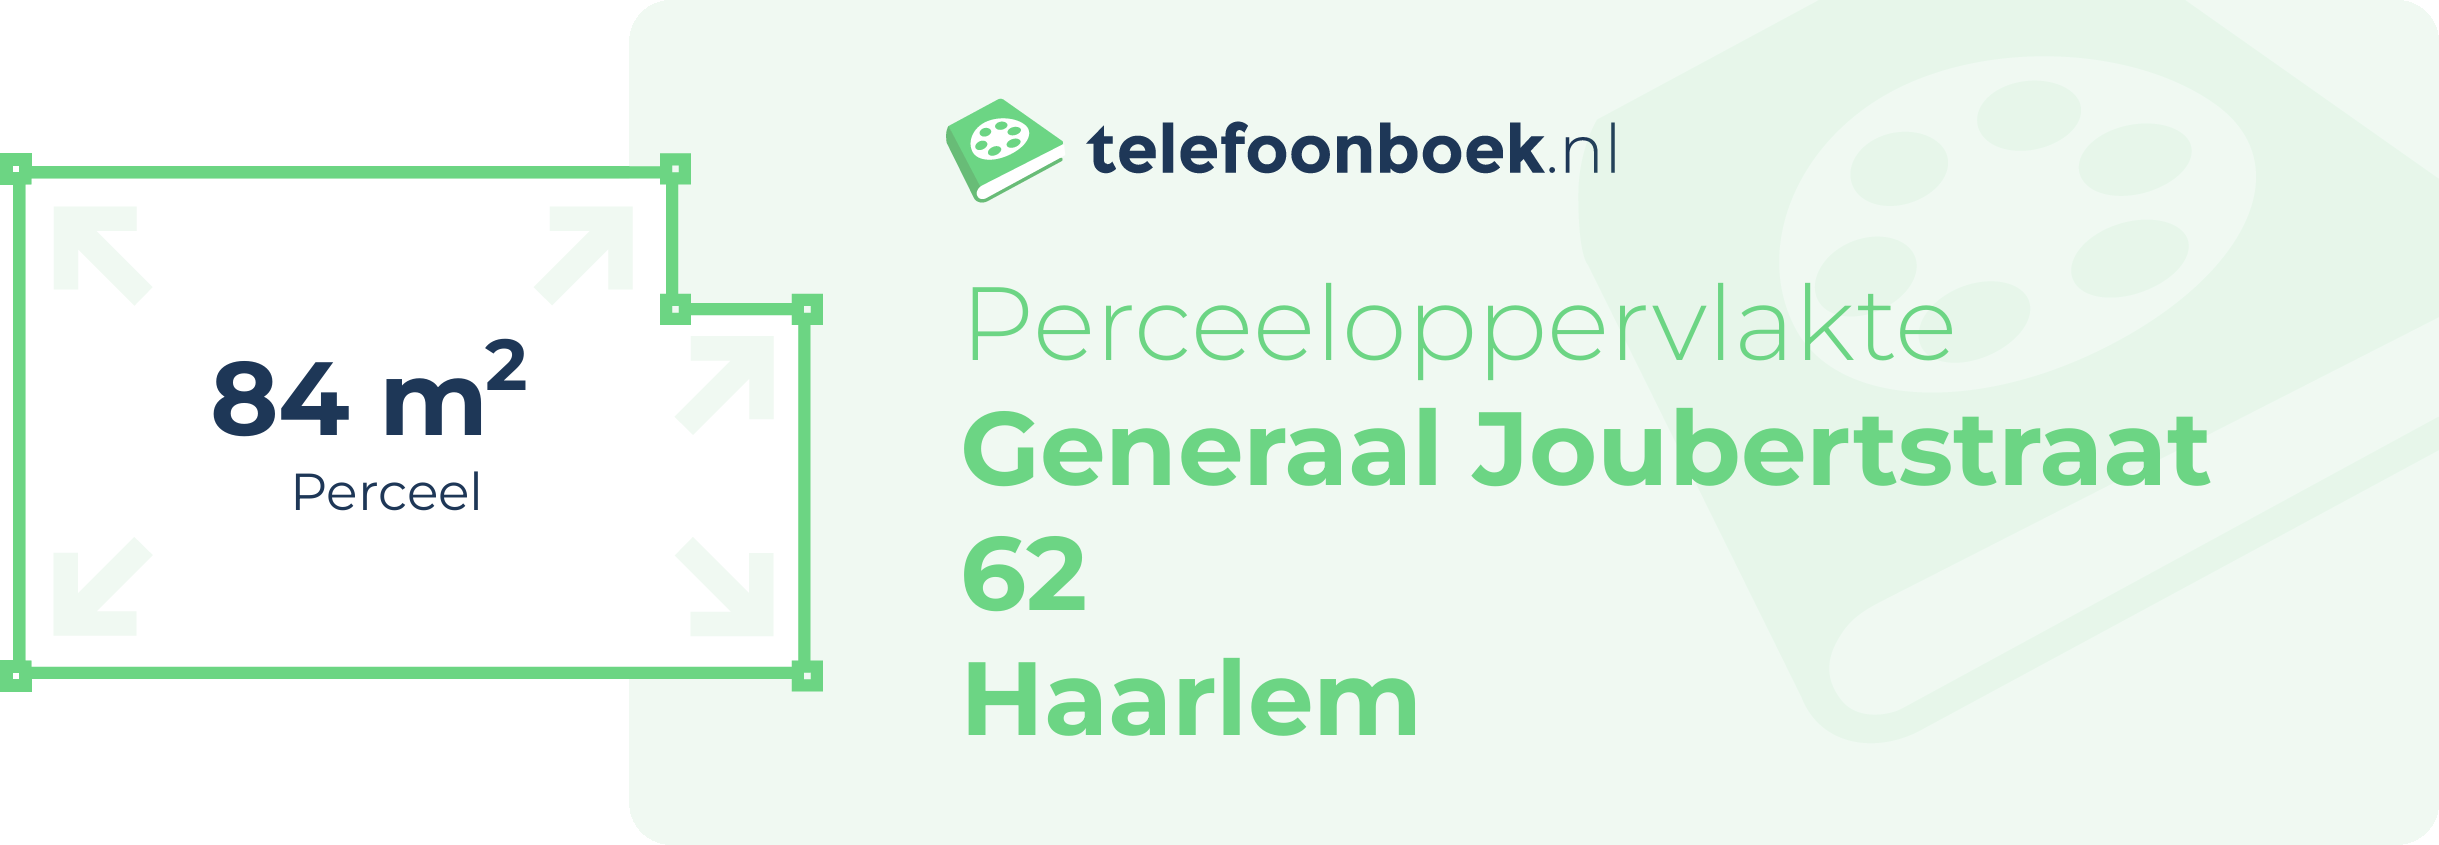 Perceeloppervlakte Generaal Joubertstraat 62 Haarlem